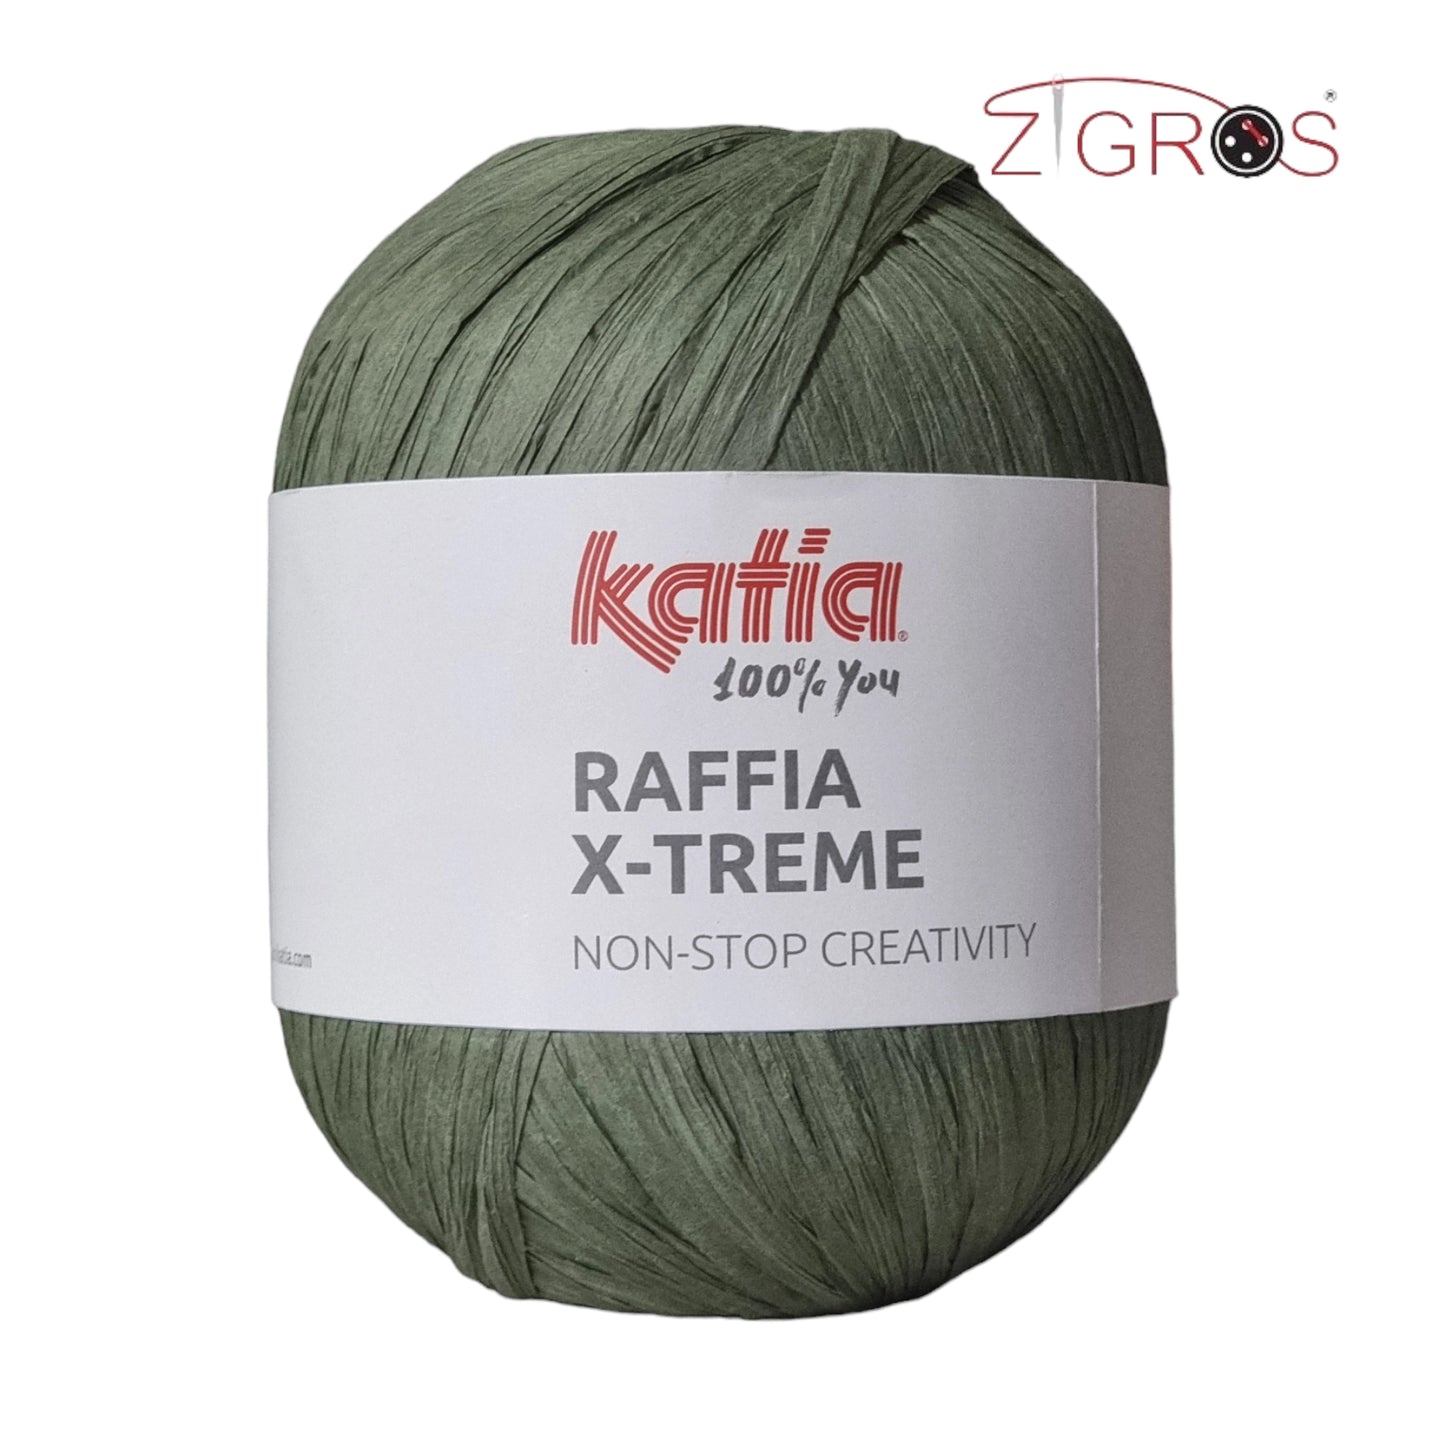 Raffia X-Treme By Katia Gomitolo da 100 grammi